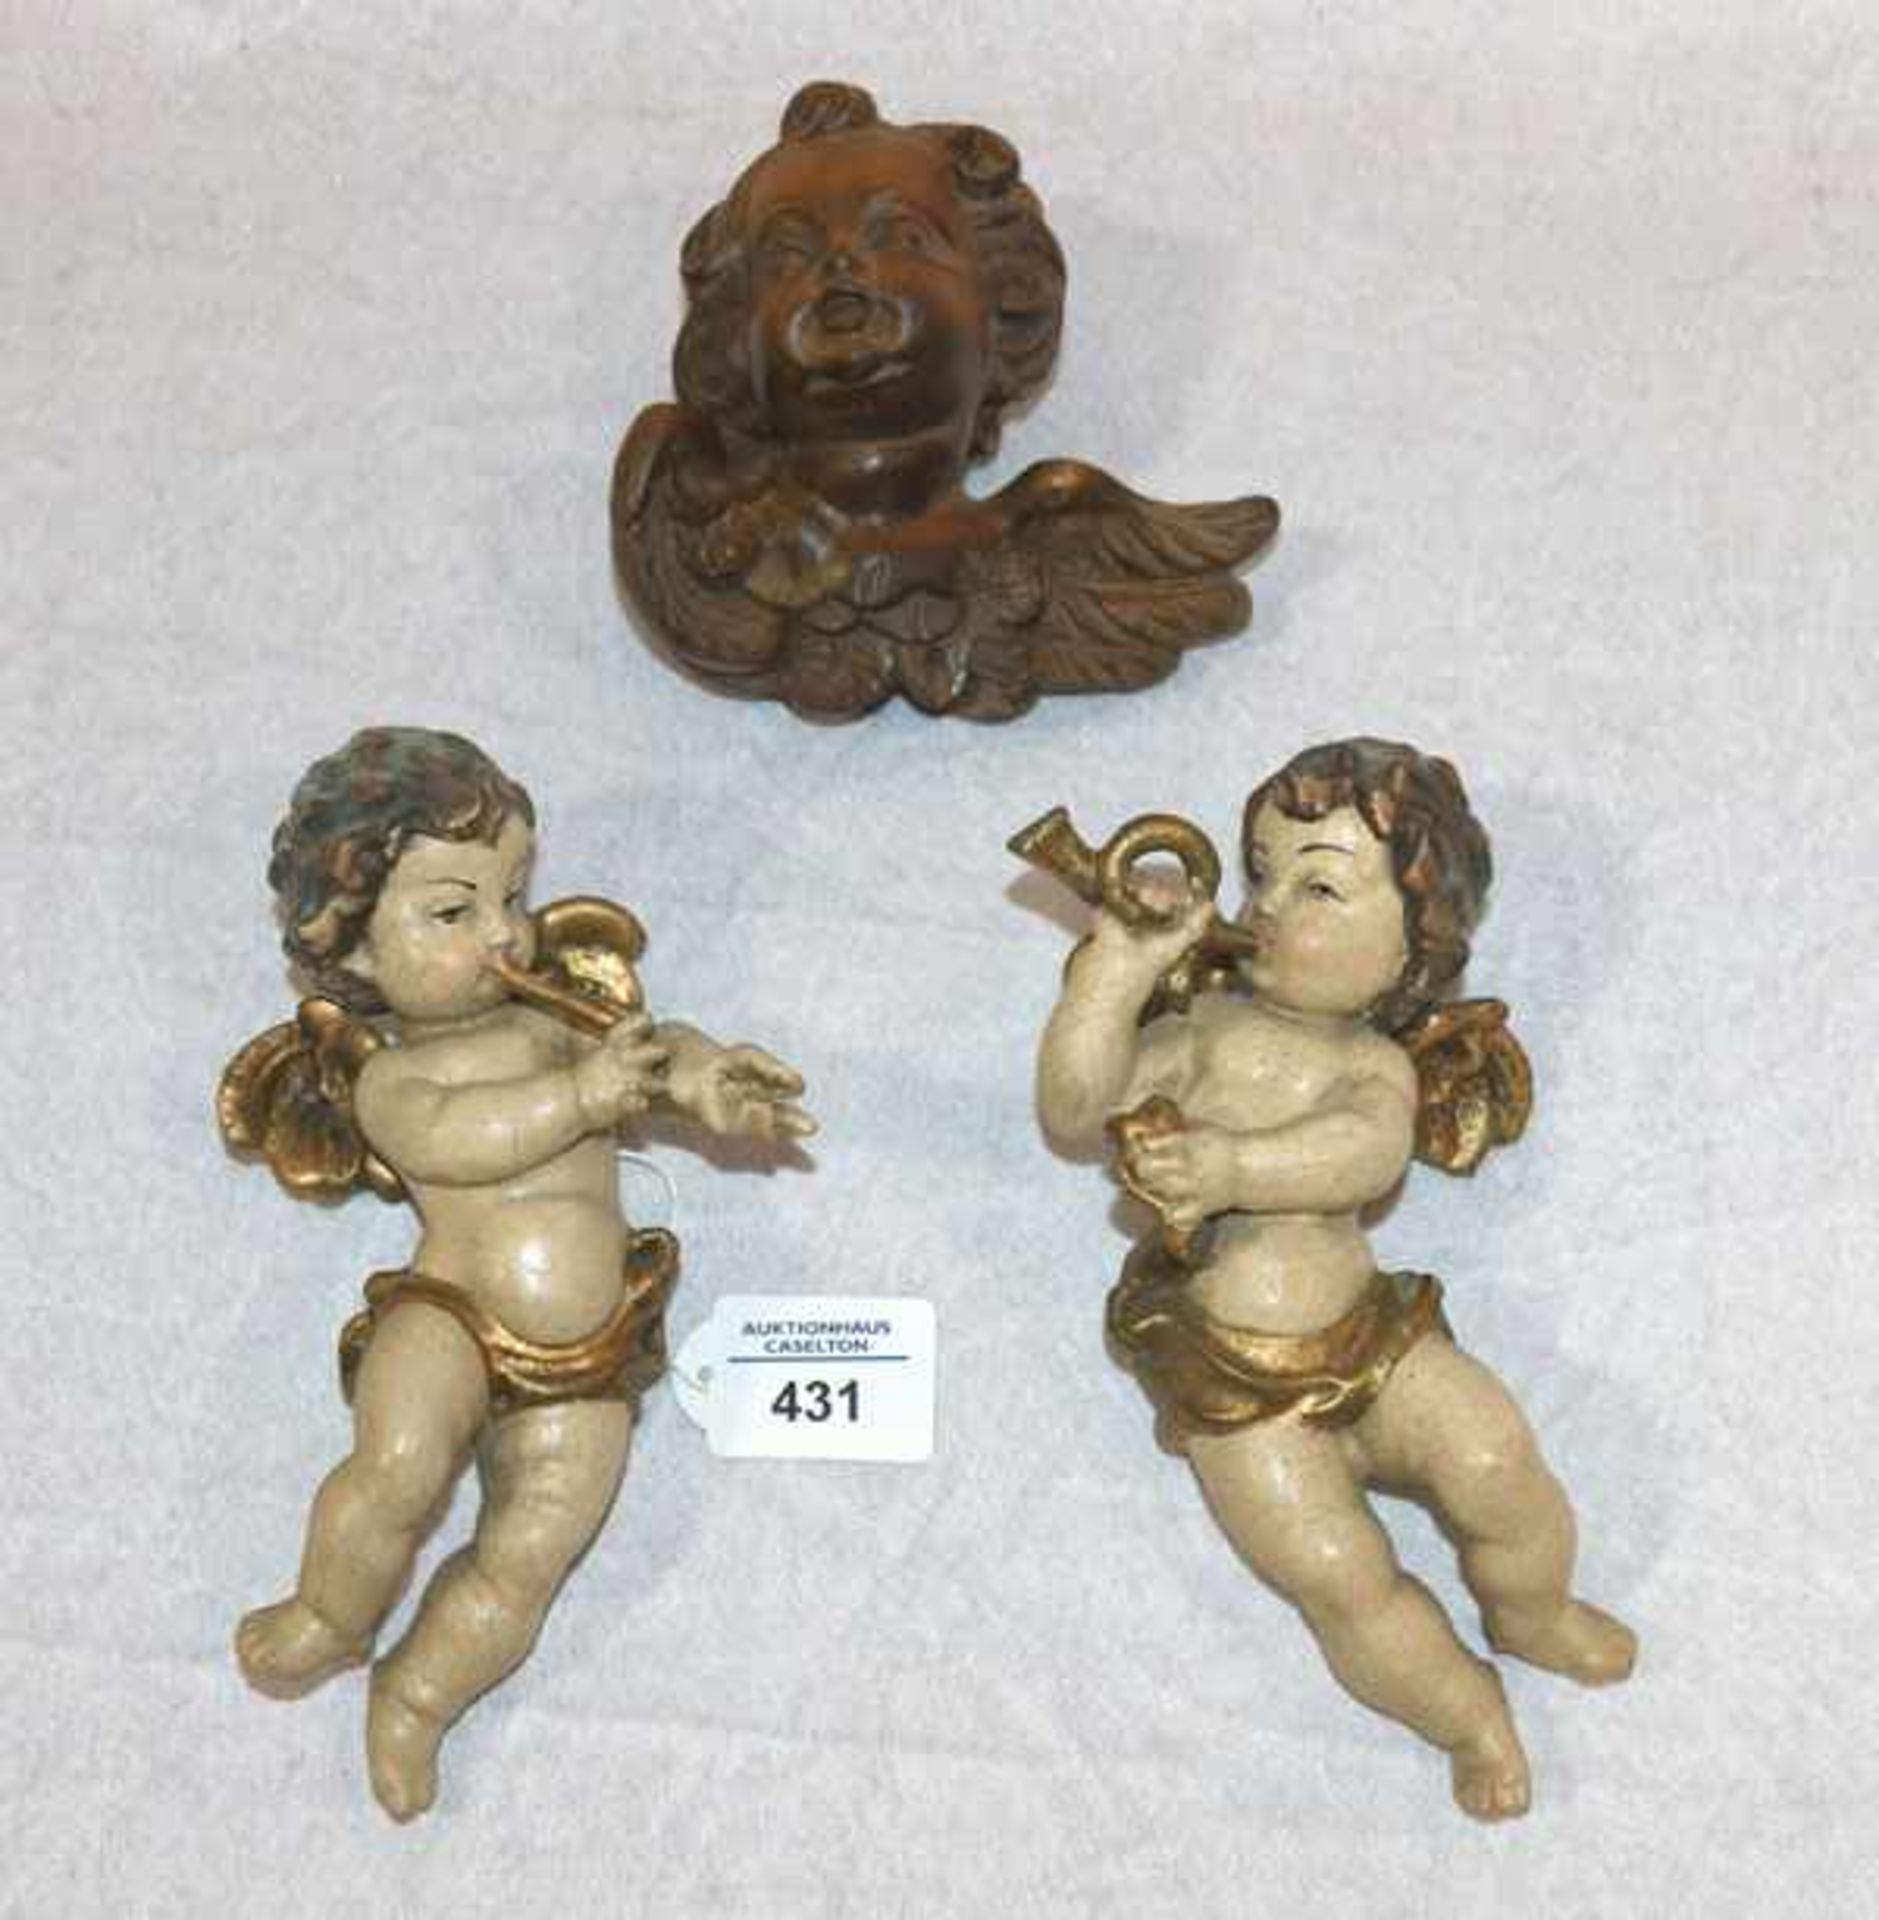 2 Holzfiguren 'Musizierende Engel', gefaßt, beschädigt, H 2 cm, und Puttenkopf, gebeizt, H 14 cm,